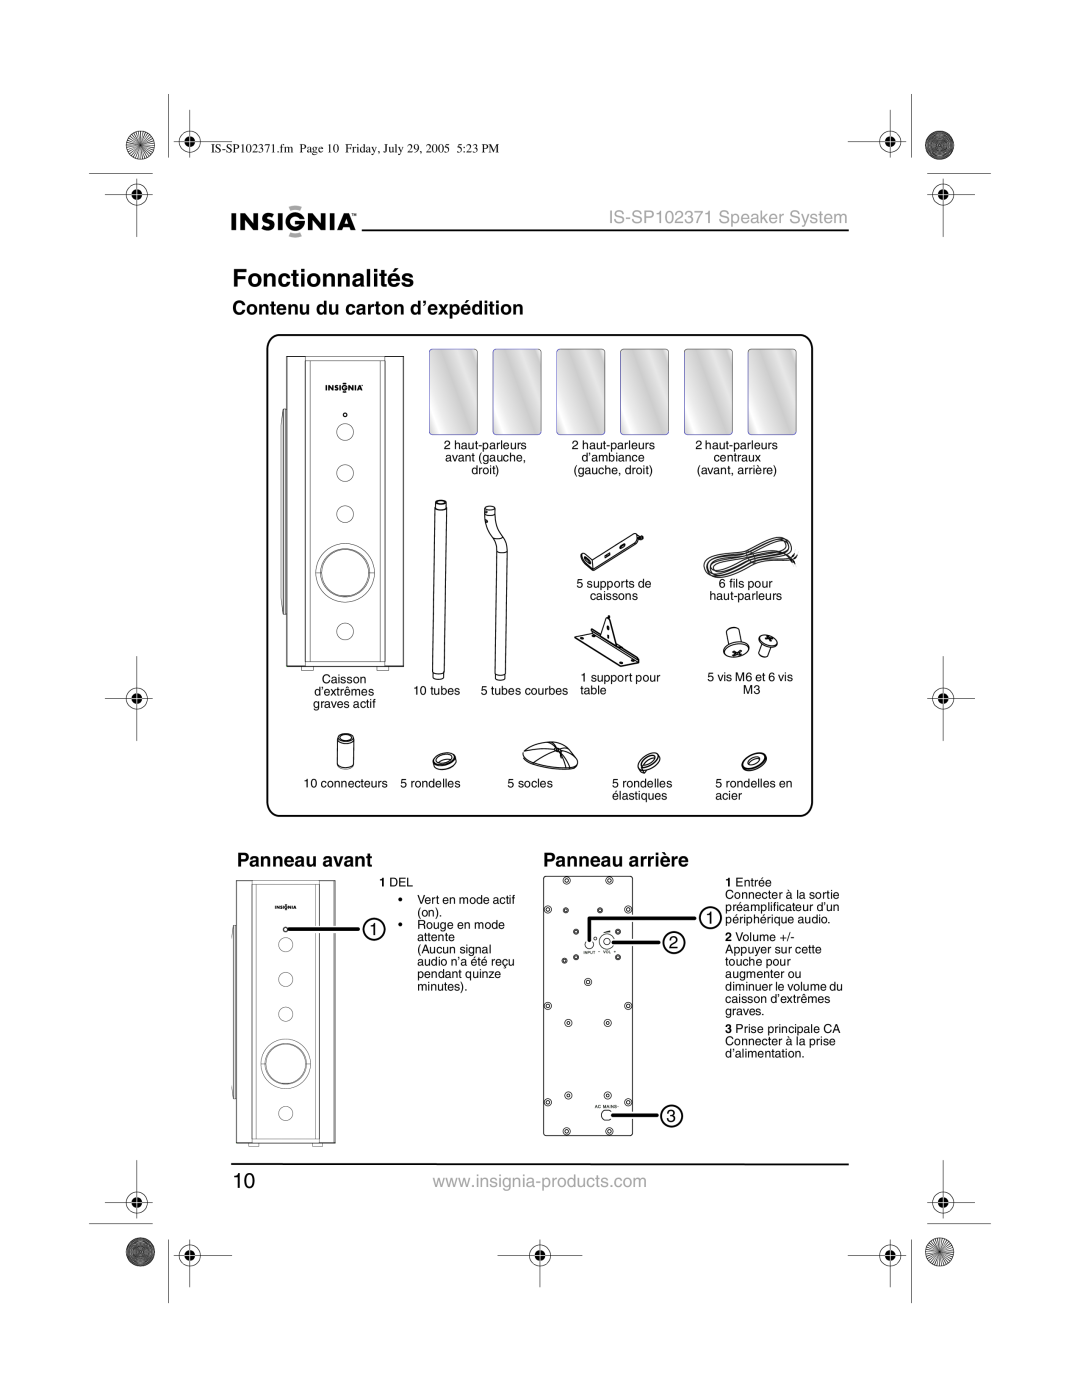 Insignia IS-SP102371 manual Fonctionnalités, Contenu du carton d’expédition, Panneau avant, Panneau arrière, Volume + 